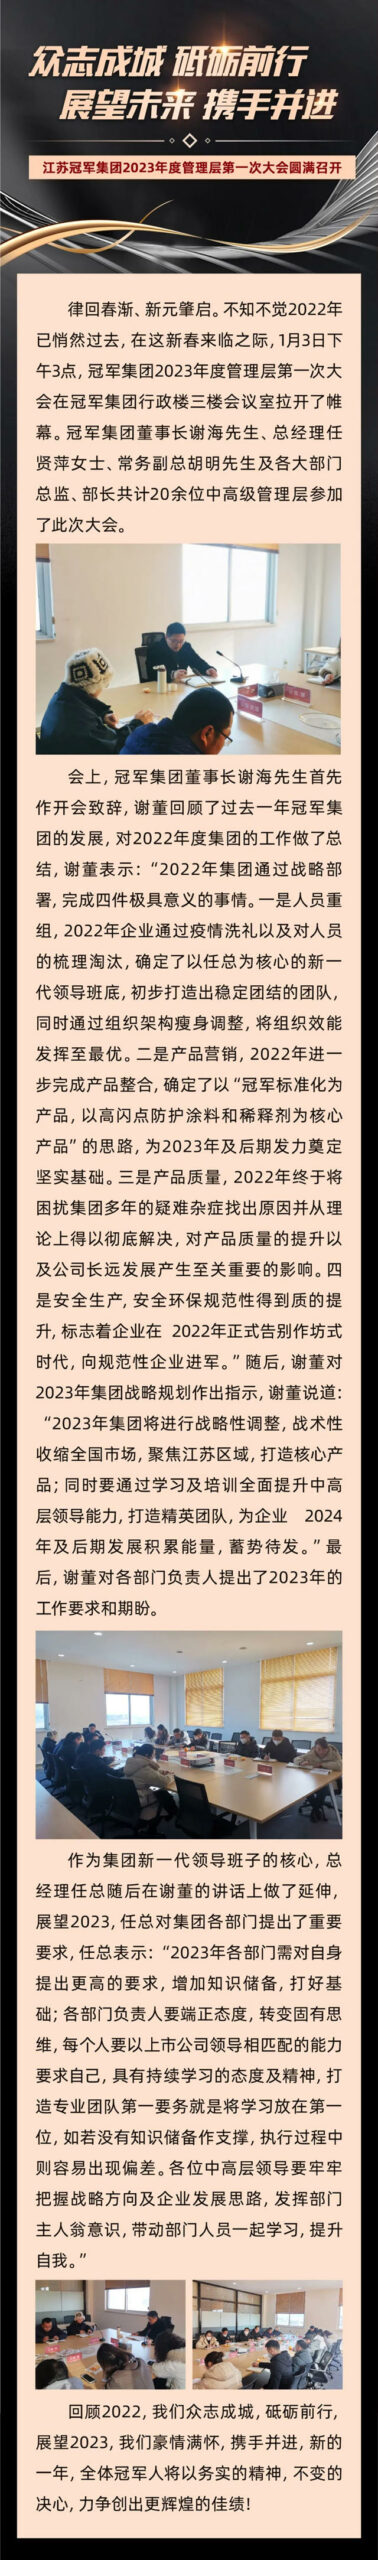 江苏冠军集团2023年度管理层第一次大会圆满召开